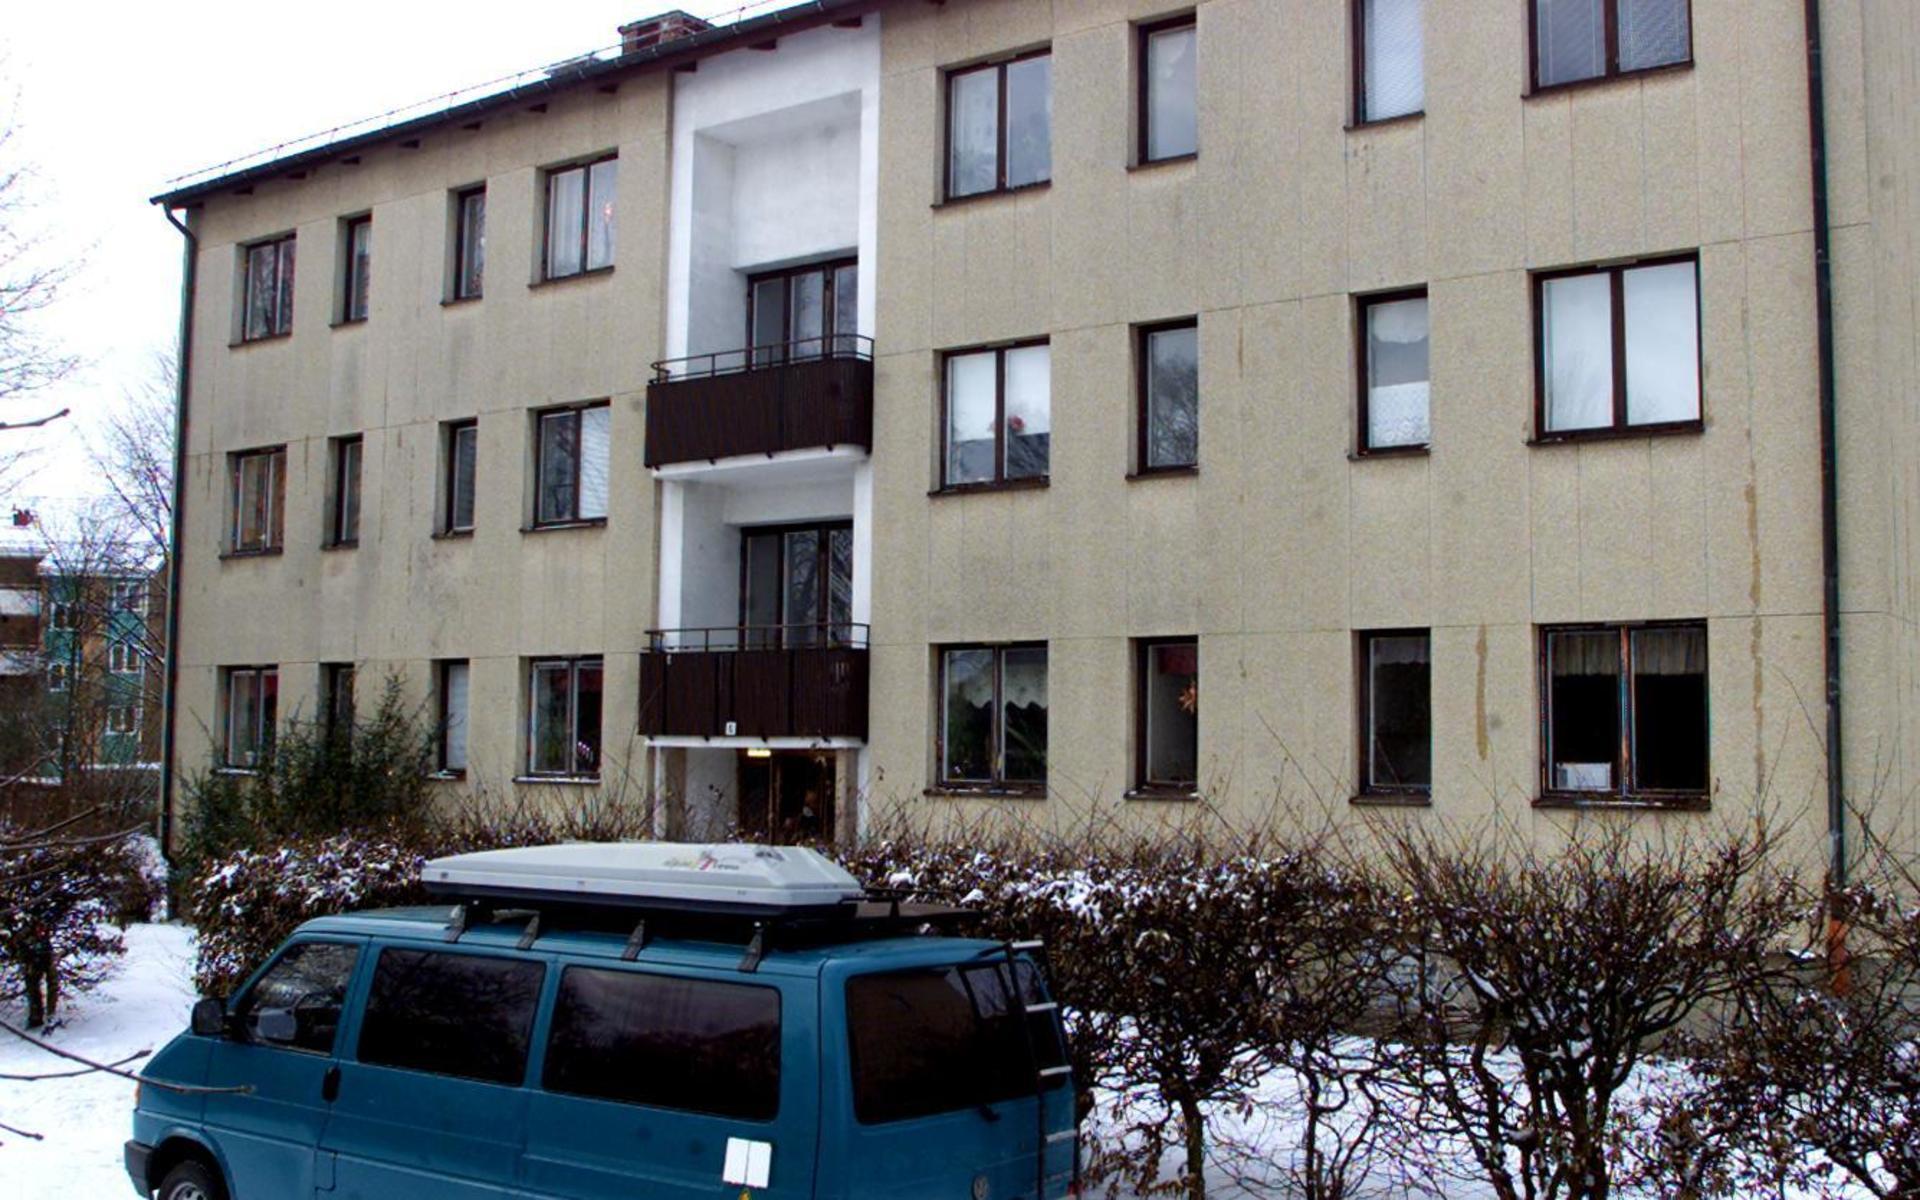 Det var i en lägenhet i det här huset på Söderlingsvägen som den 22-årige Marcus Norén blev knivhuggen och strypt.